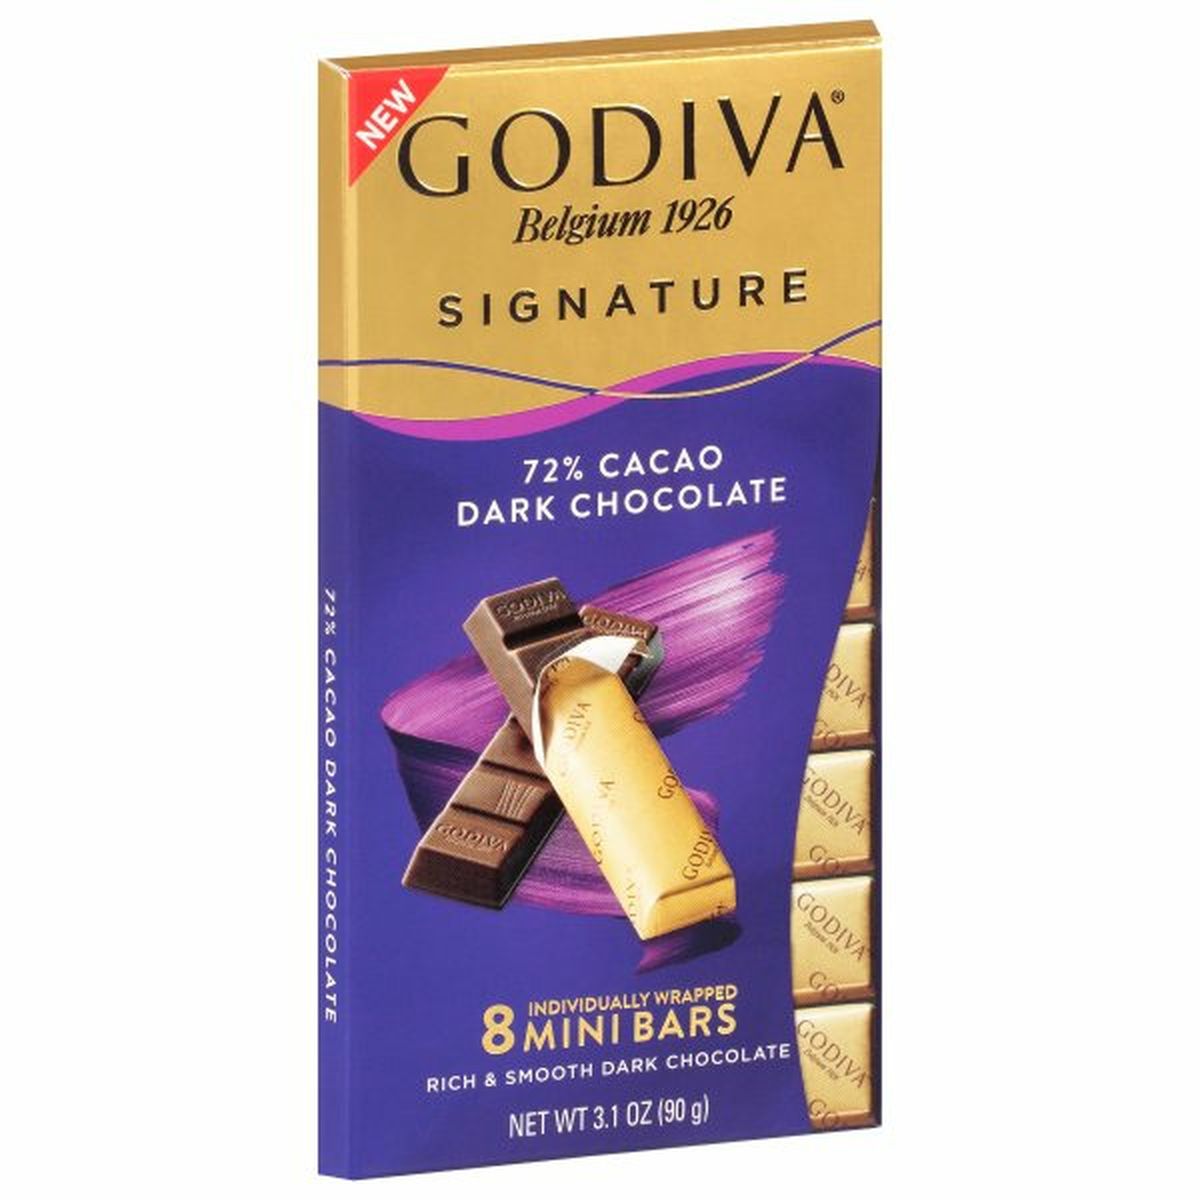 Calories in Godiva Signature Dark Chocolate, Mini Bars, 72% Cacao